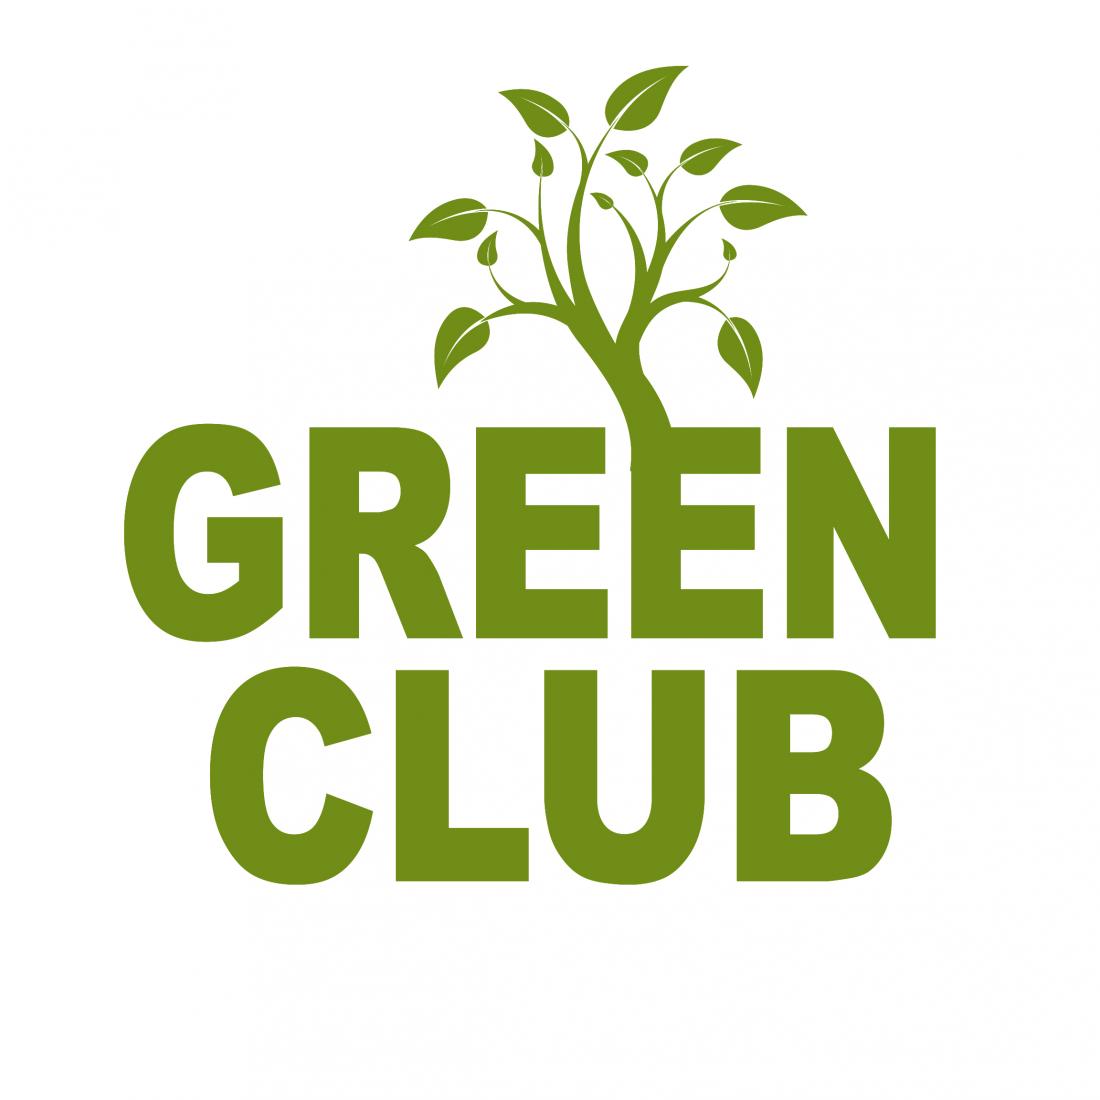 Premium-отдых в комплексе "Green Club" со скидкой до 50%